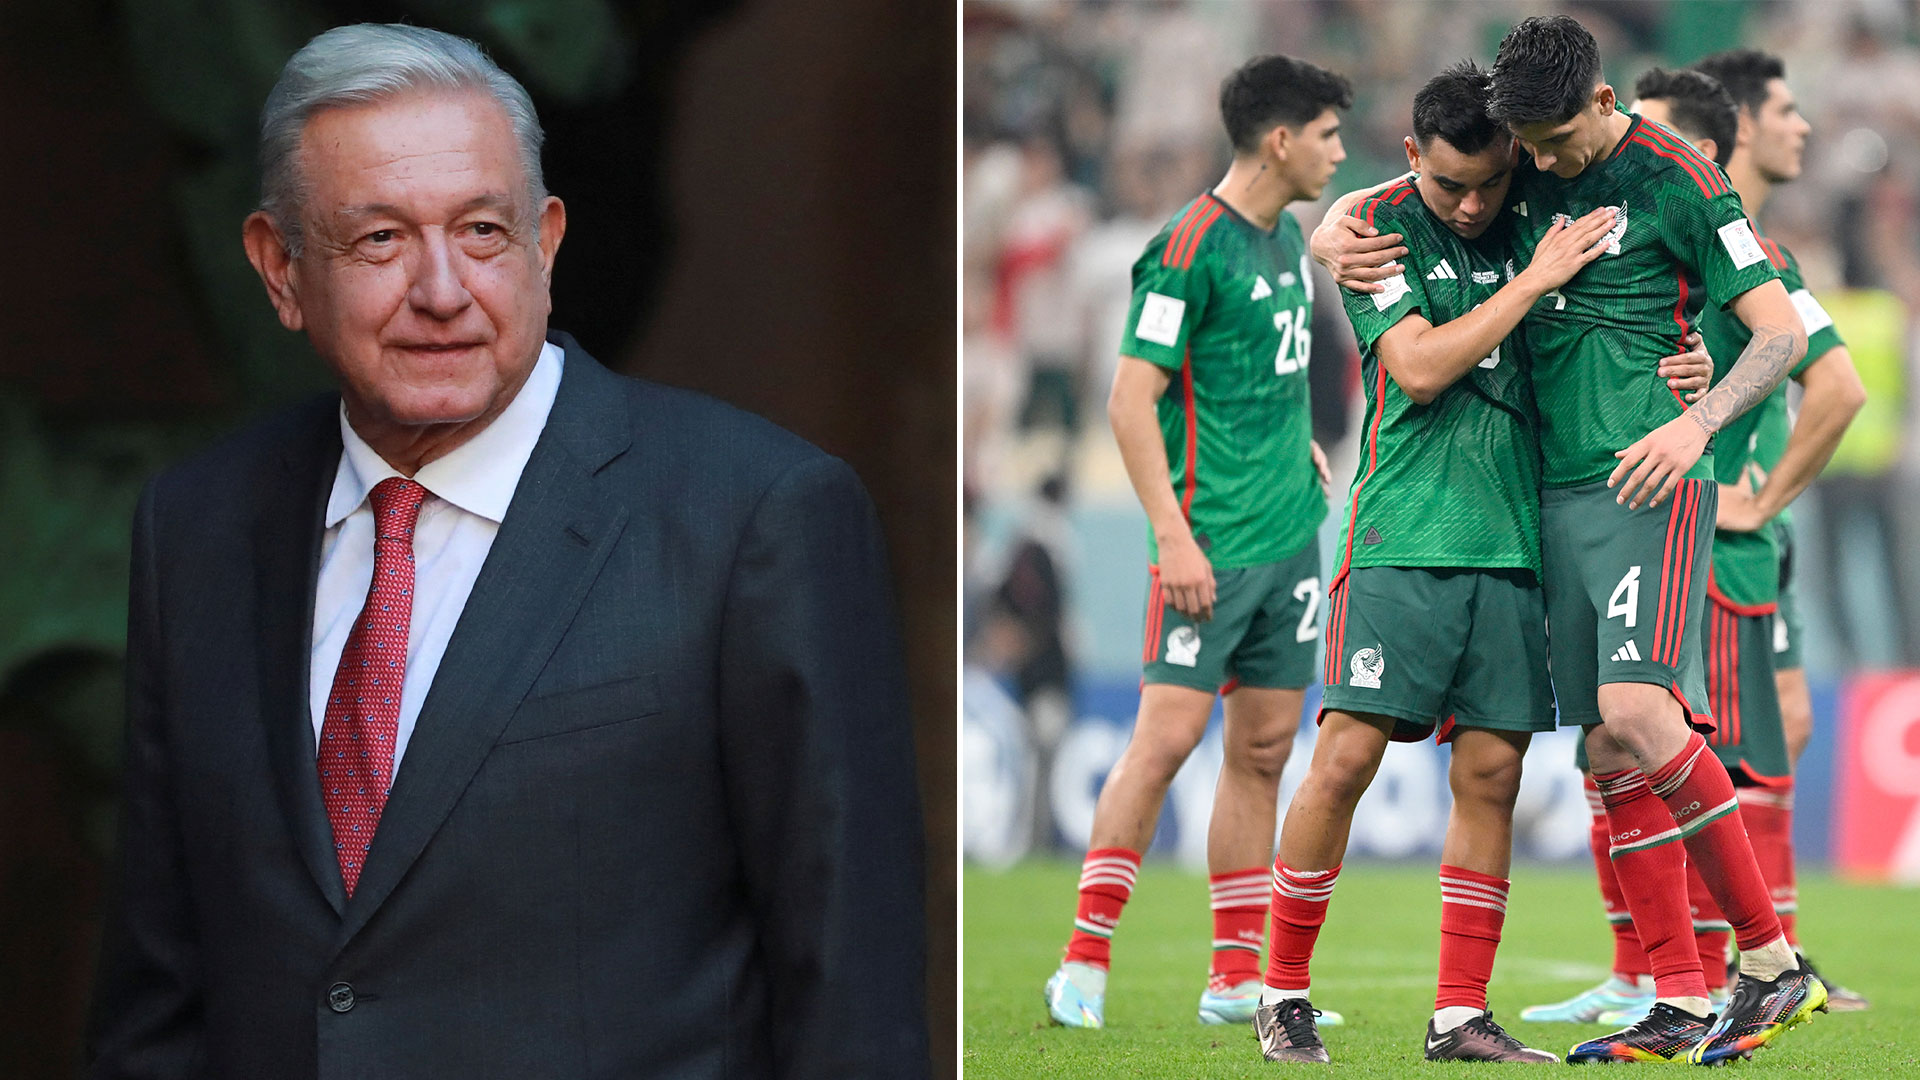 Minuto a minuto: “Hay mucha afición para poco desarrollo deportivo”, dijo AMLO sobre la Selección Mexicana 